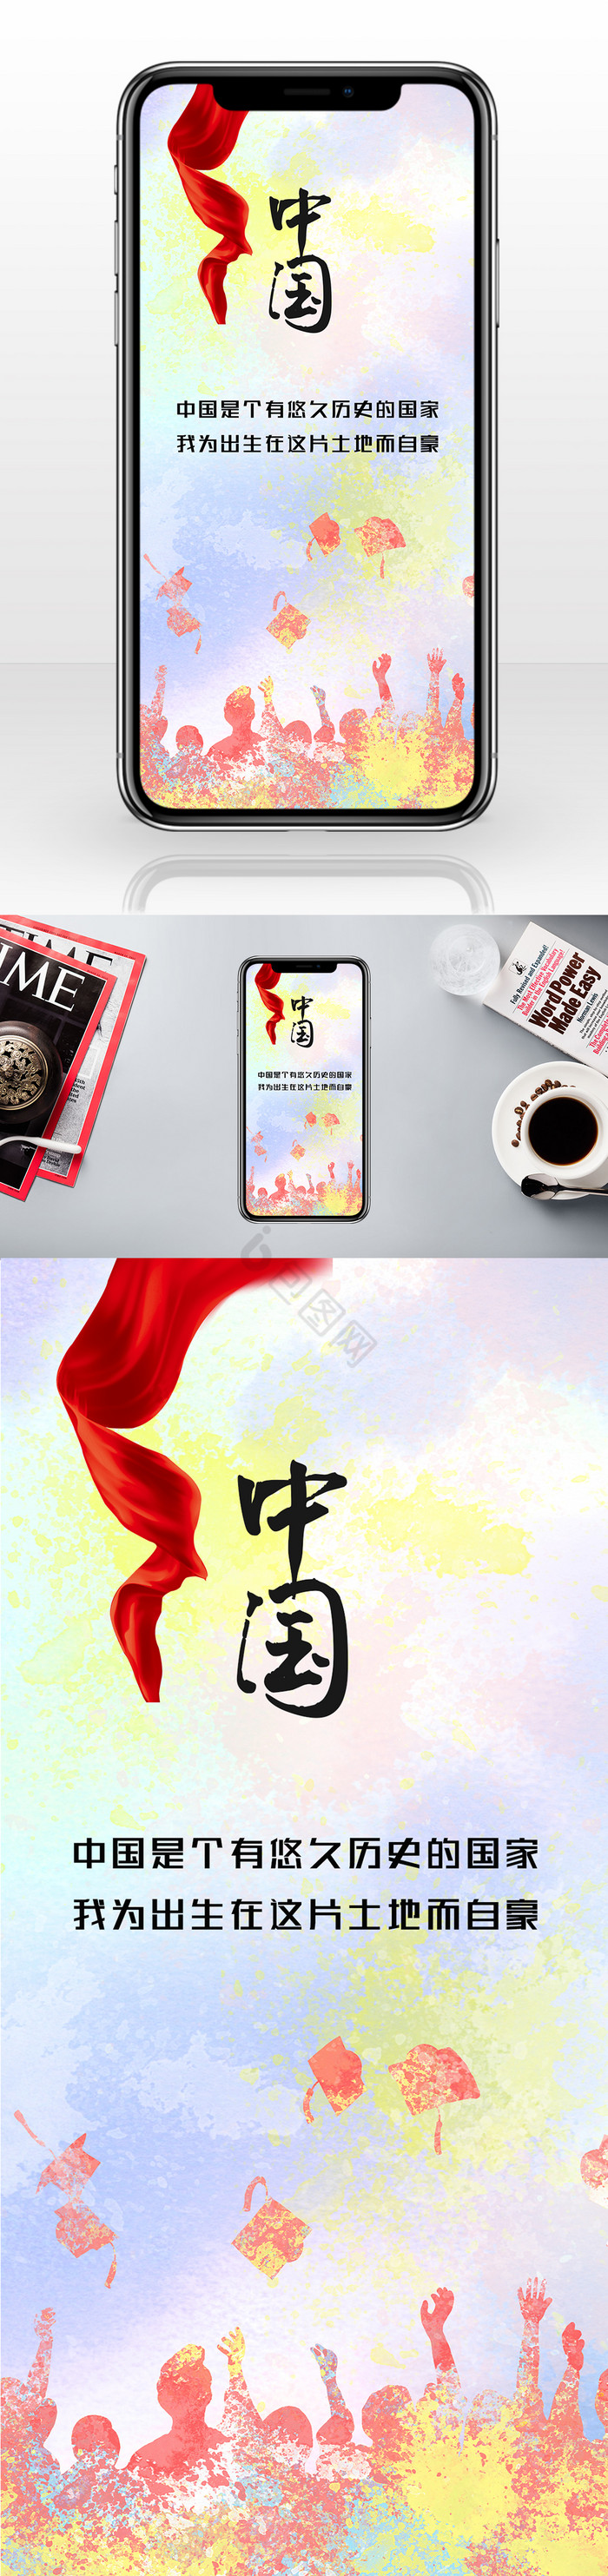 简约中国文化爱国手机配图